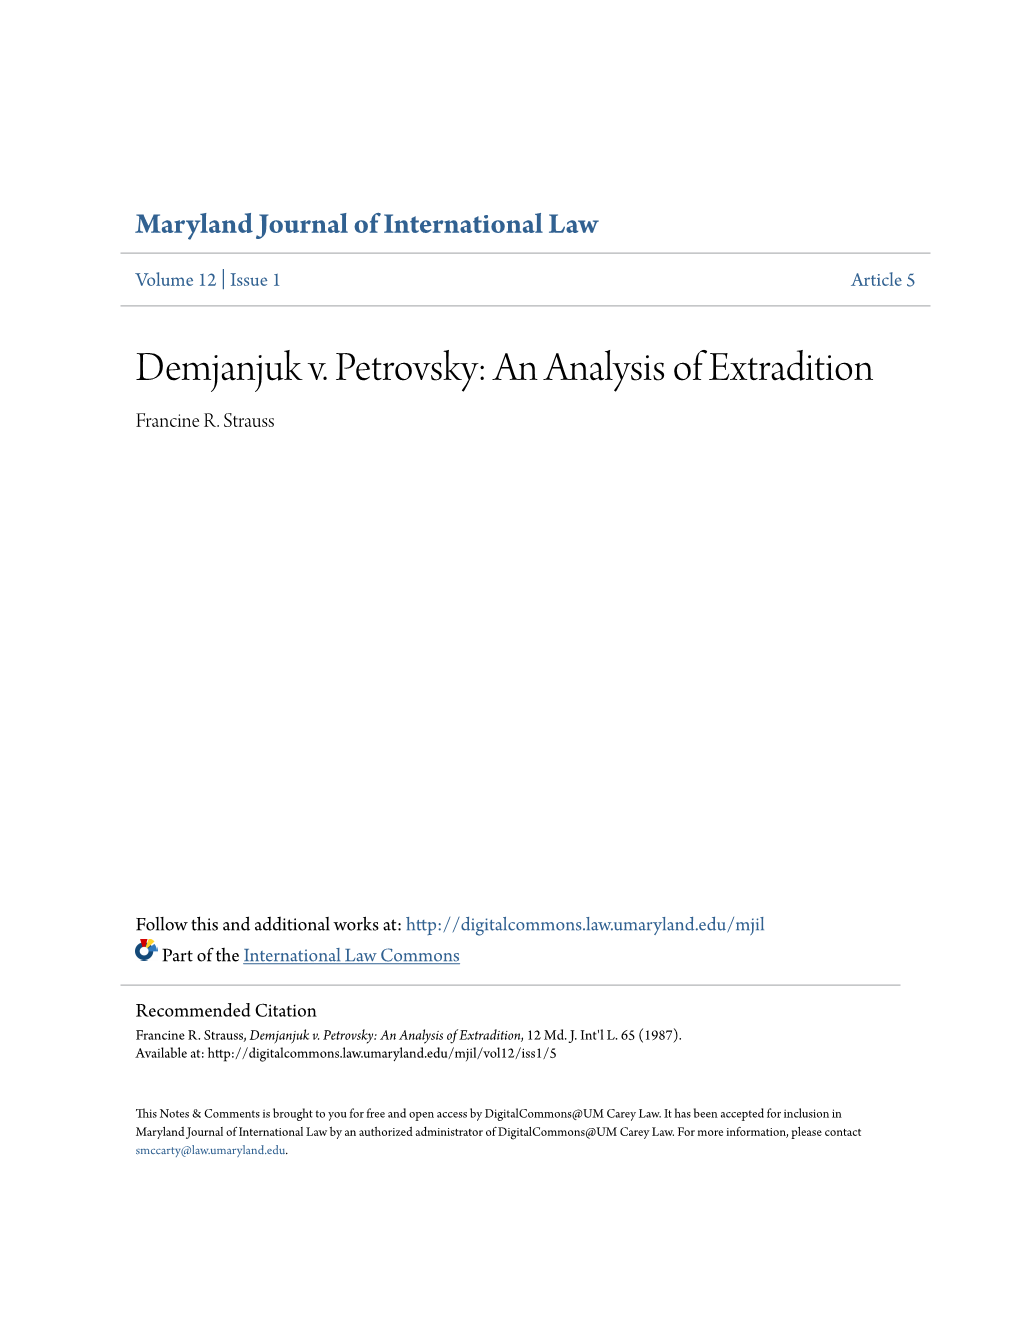 Demjanjuk V. Petrovsky: an Analysis of Extradition Francine R